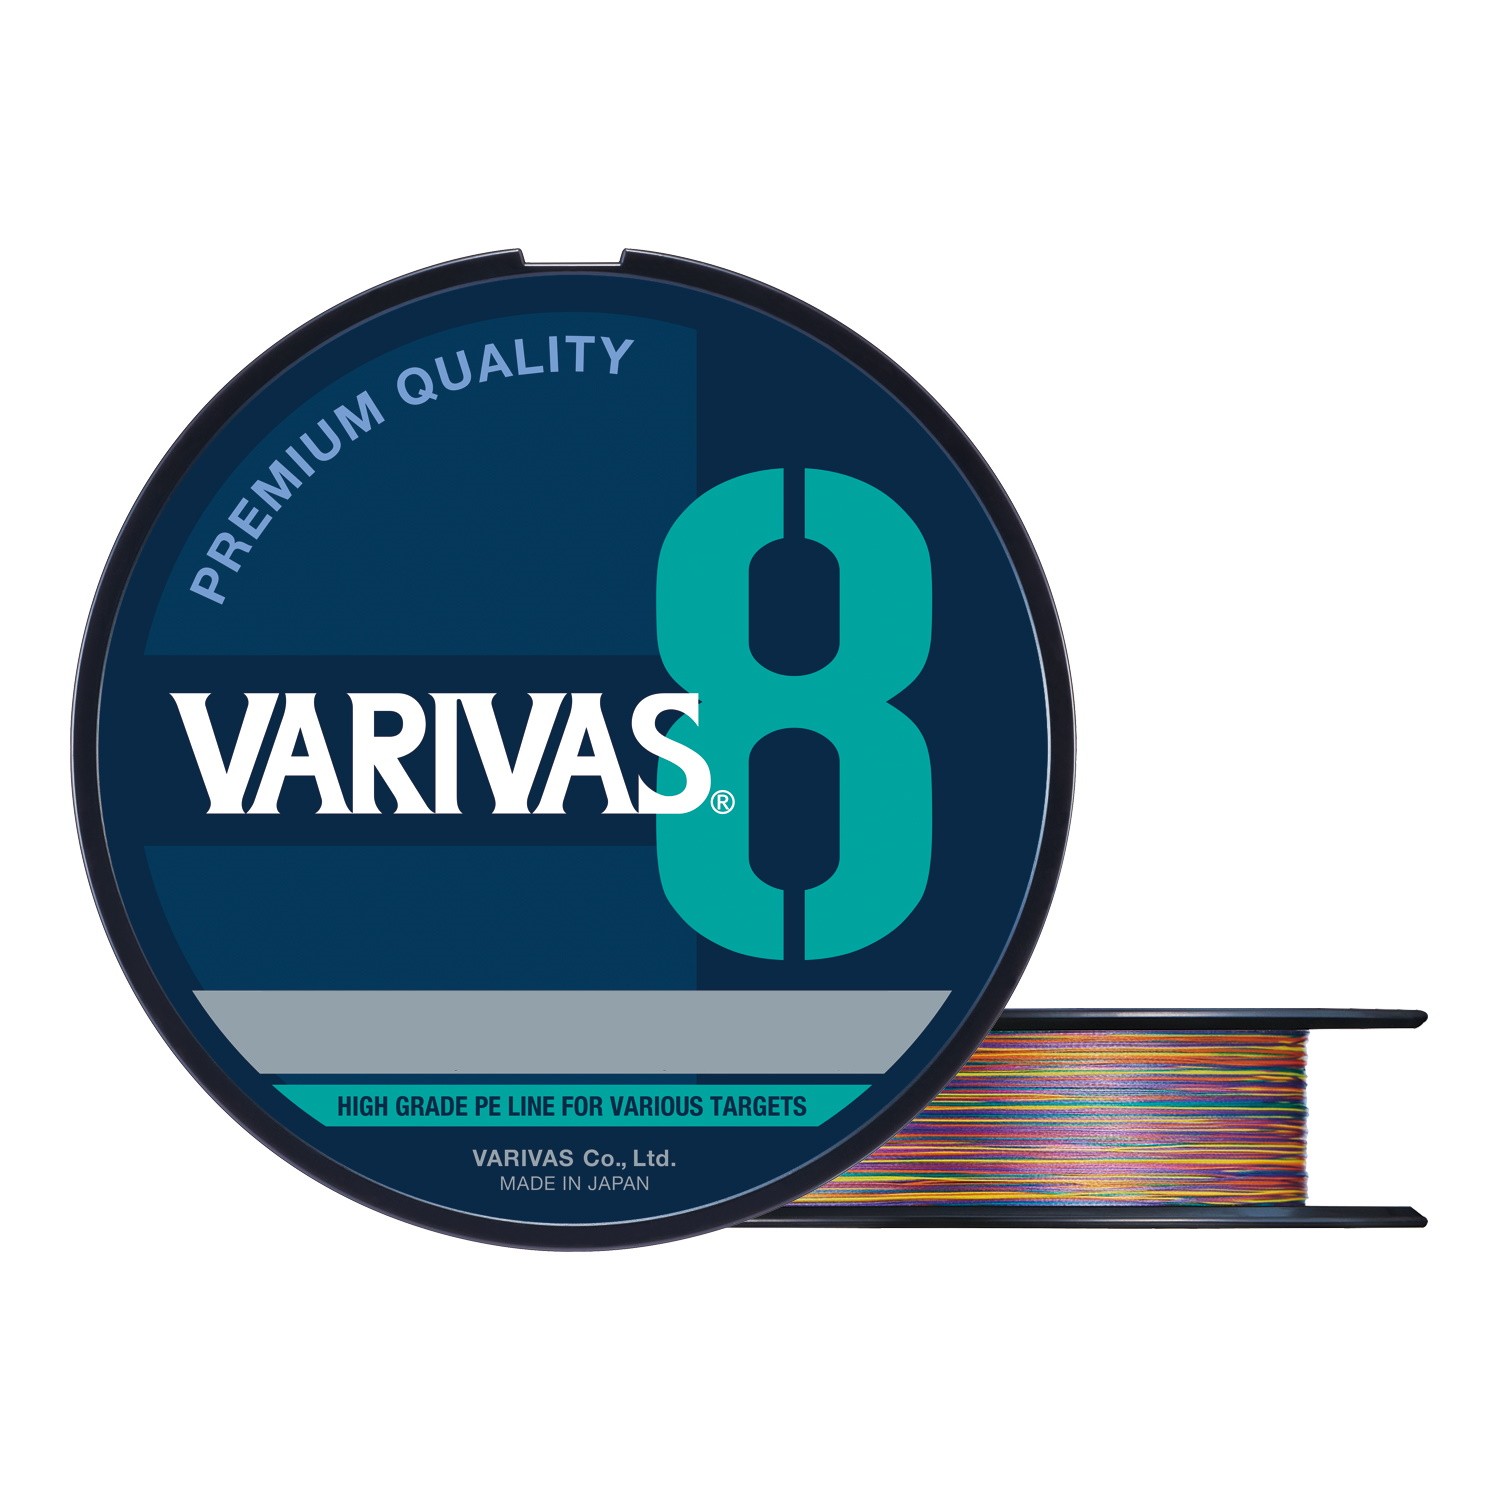 Varivas - купить товары бренда на официальном сайте интернет